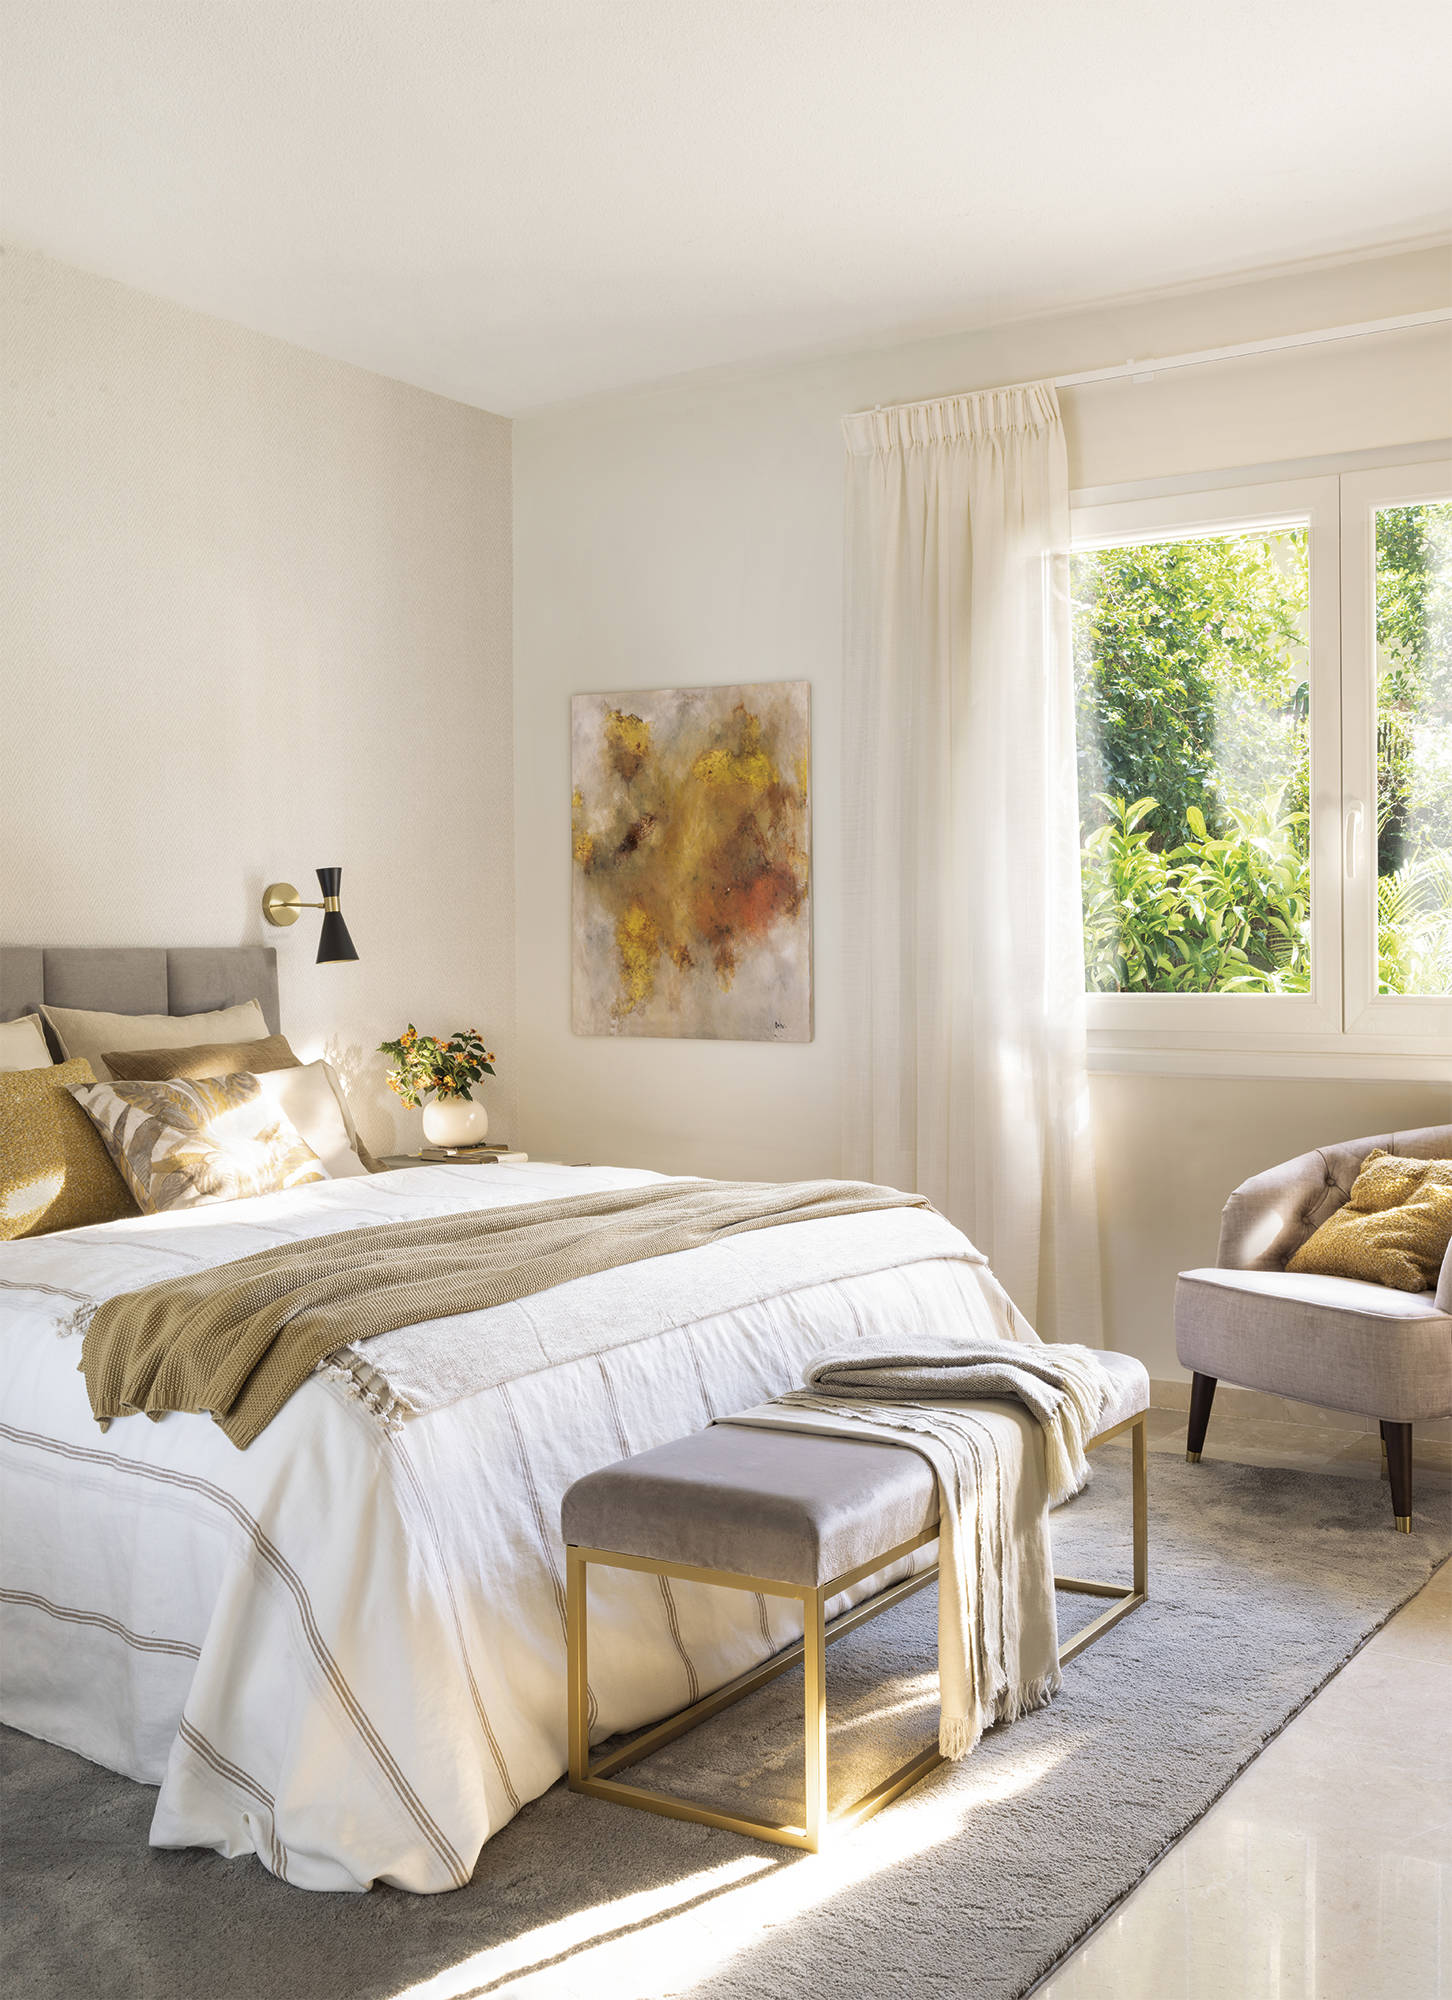 Dormitorio con cabecero tapizado, aplique dorado, banqueta, butaca tapizada y cuadro moderno